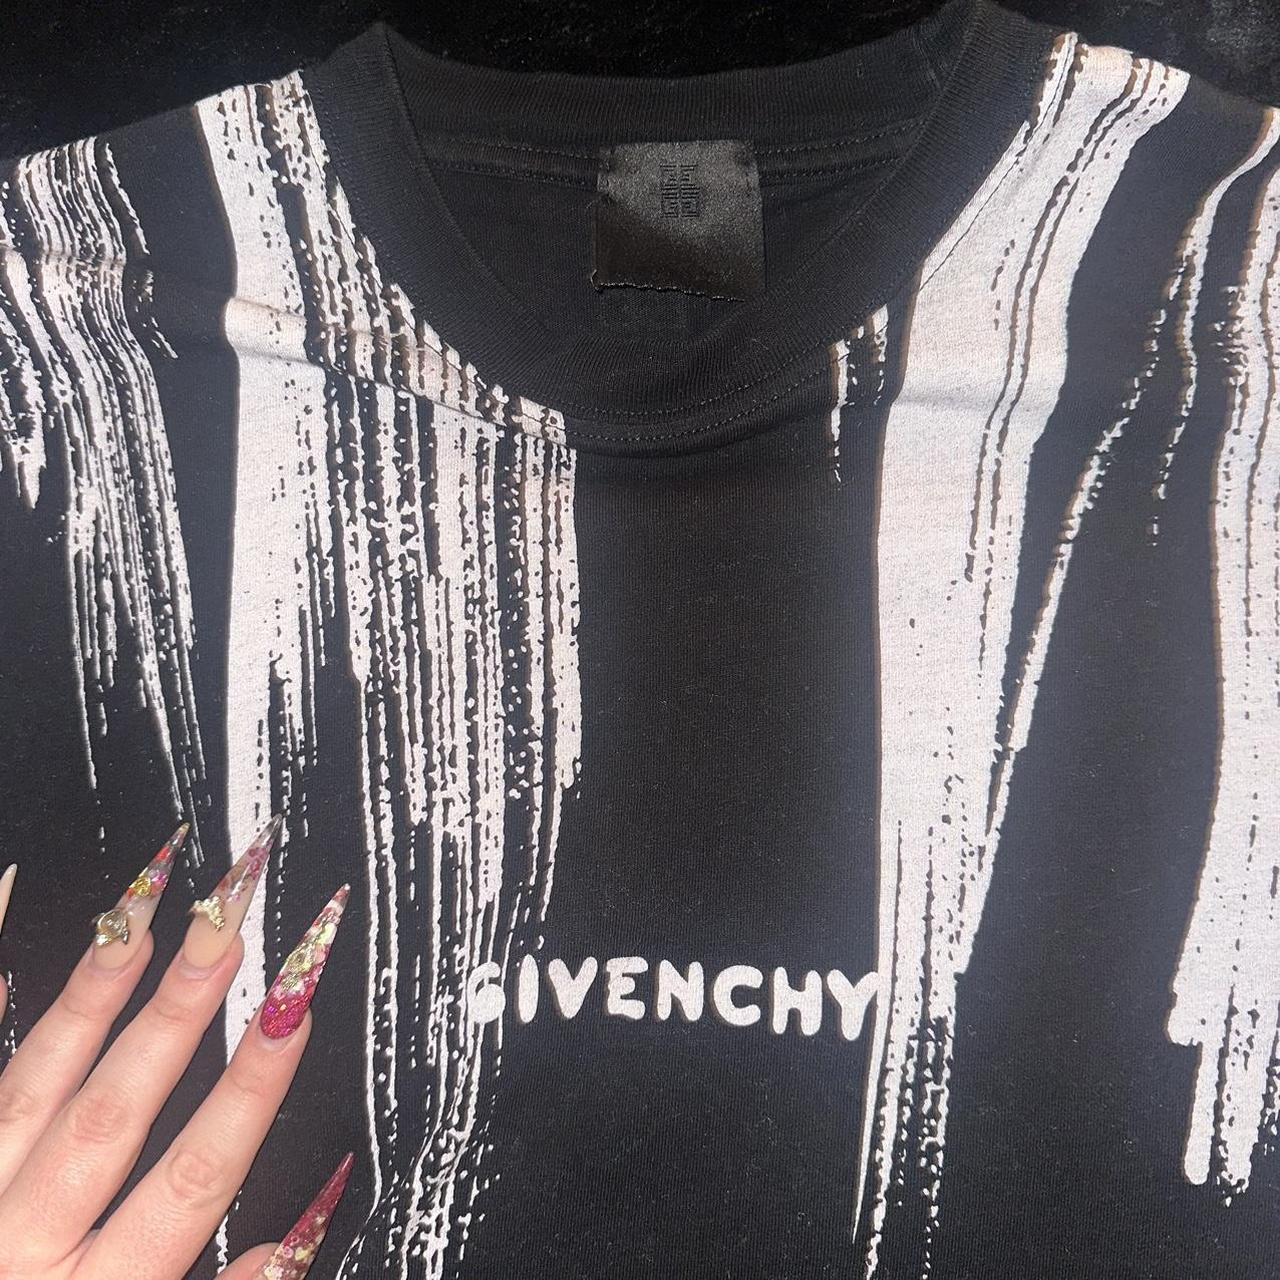 Fake vs Real Givenchy T shirt / How to spot fake Givenchy T shirt 